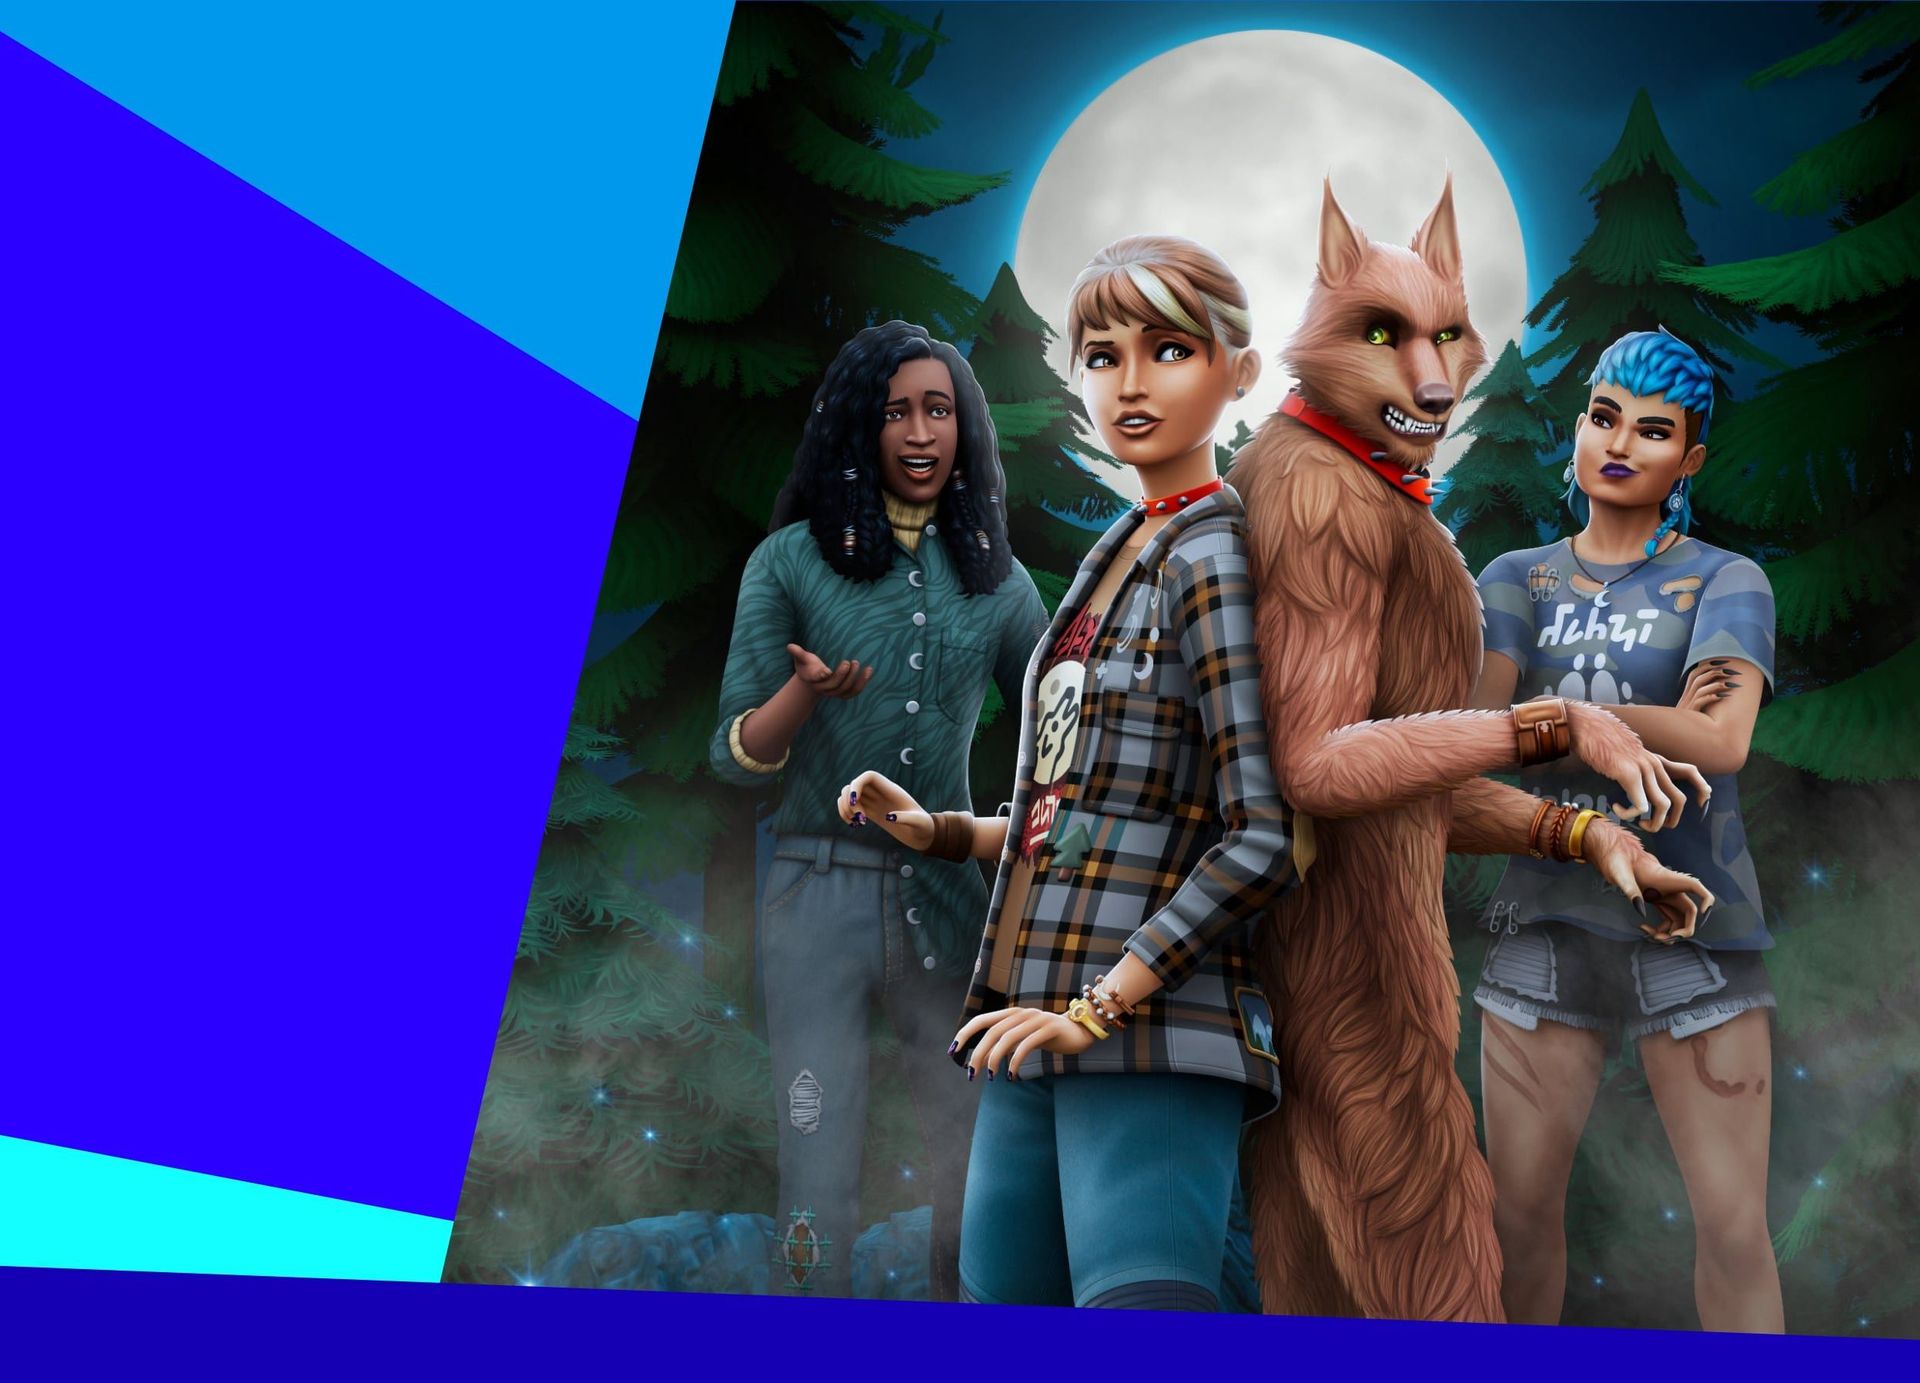 Sims 4에서 늑대 인간이되는 방법?